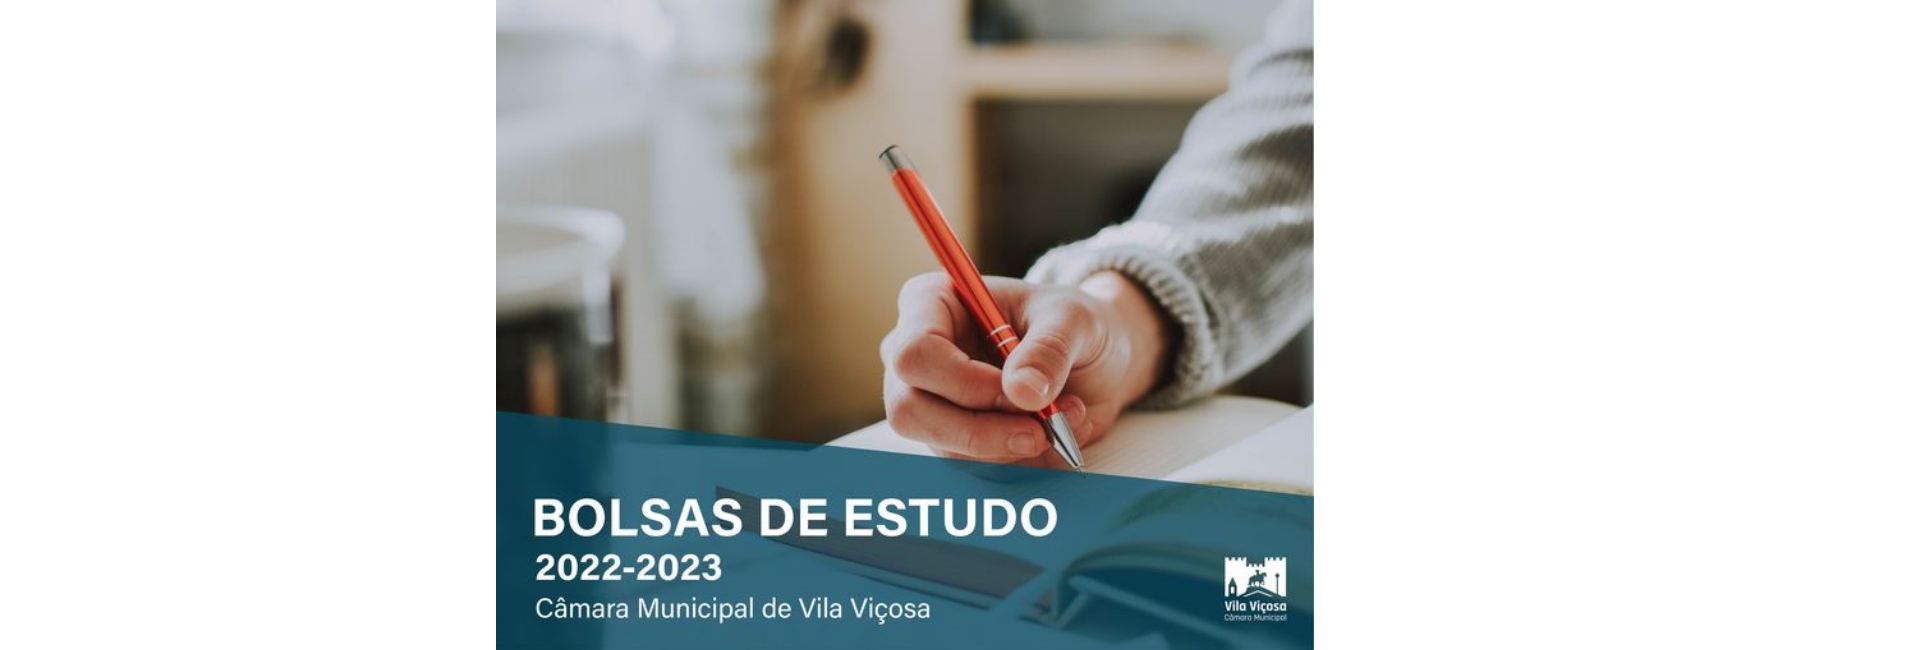 (Português) Bolsas de Estudo 2022/2023 – Candidaturas Abertas – 1 a 31 Out